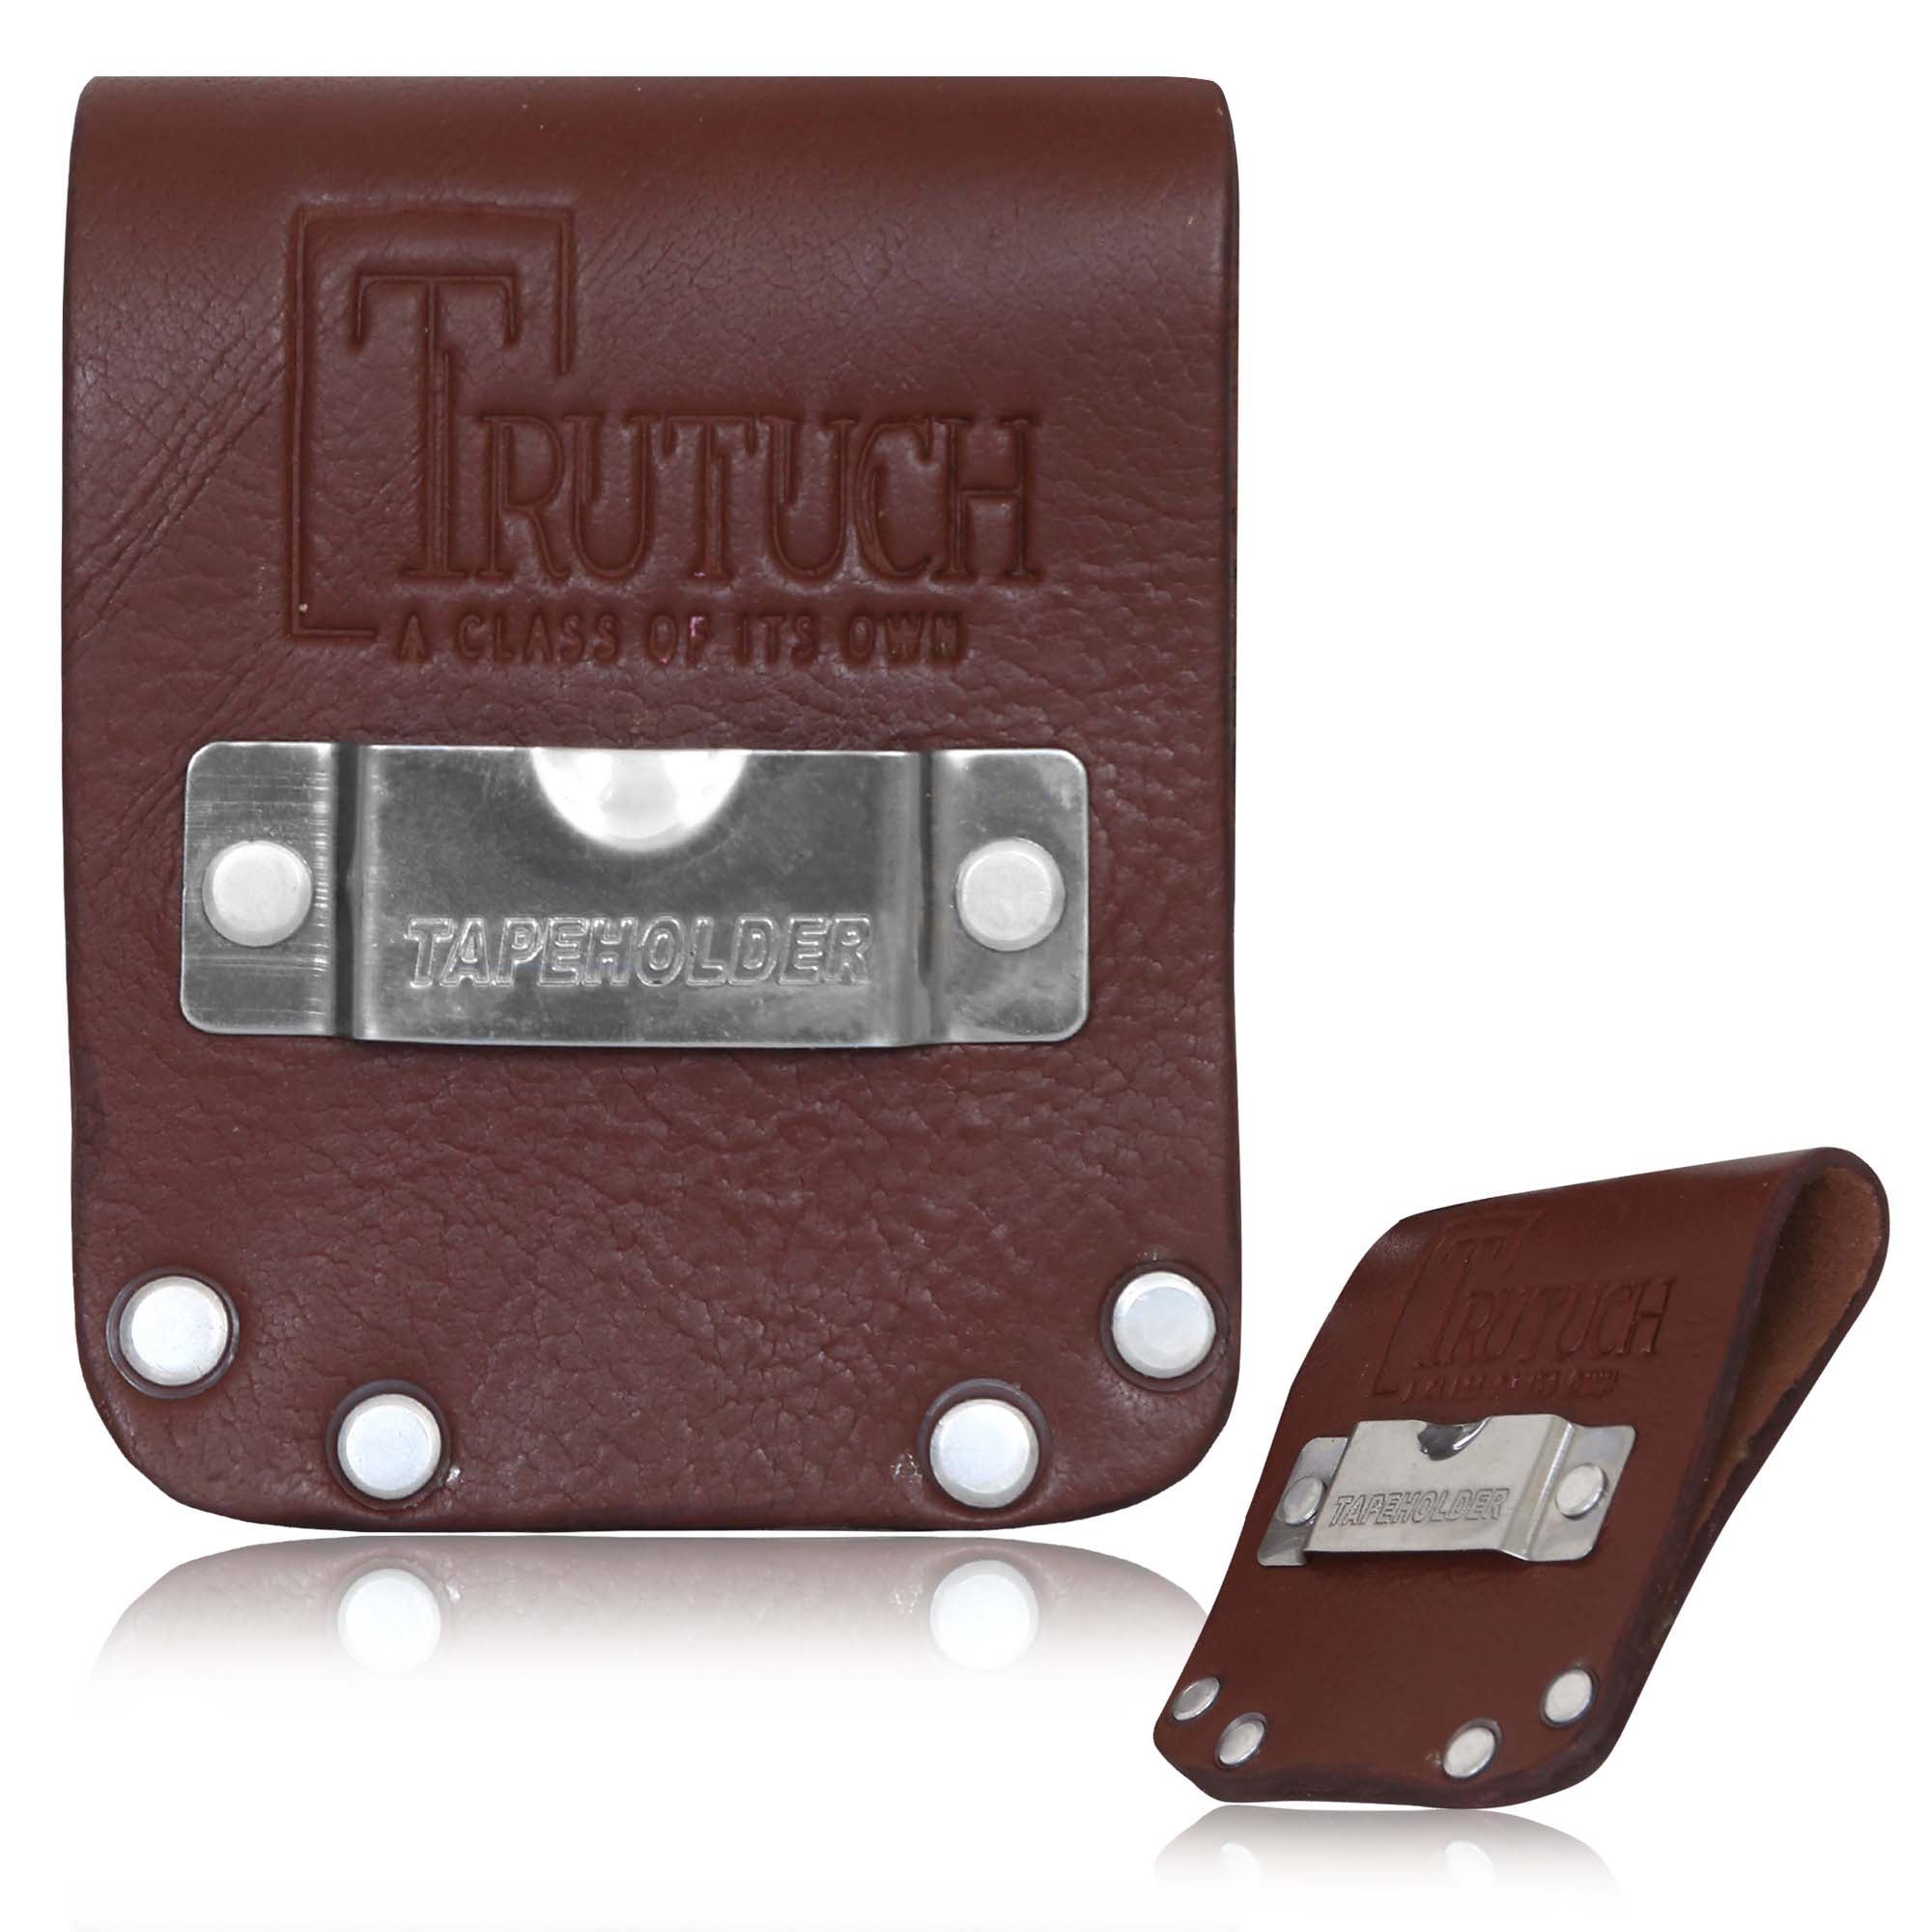 Trutuch Leather Tape Measure Holder, Clip Holder for Carpenter, Tape Holster, Construction, Framer, Electrician, TT-630-H